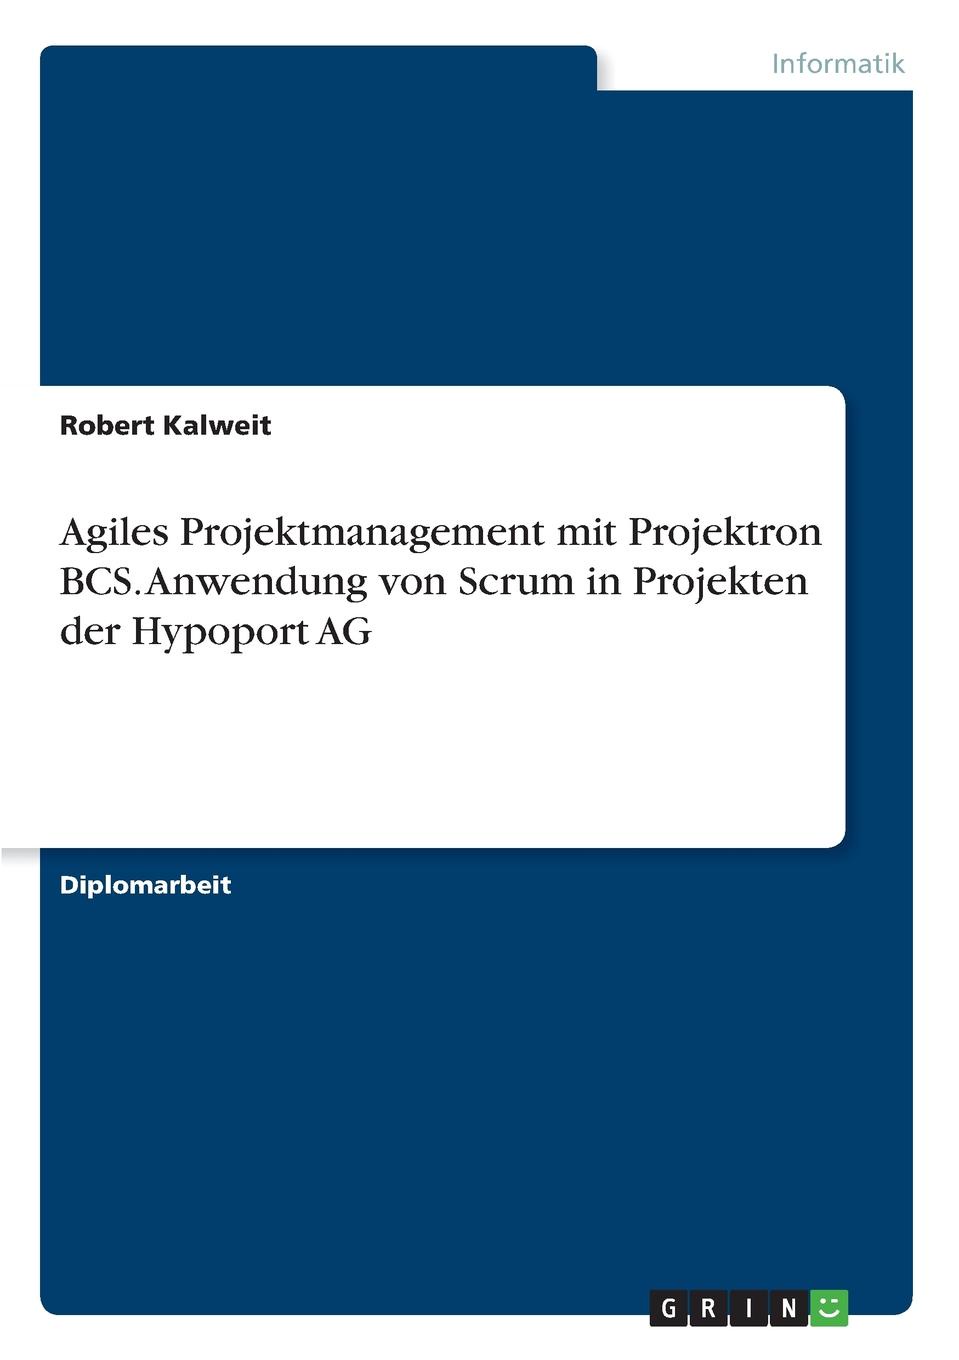 Agiles Projektmanagement mit Projektron BCS. Anwendung von Scrum in Projekten der Hypoport AG